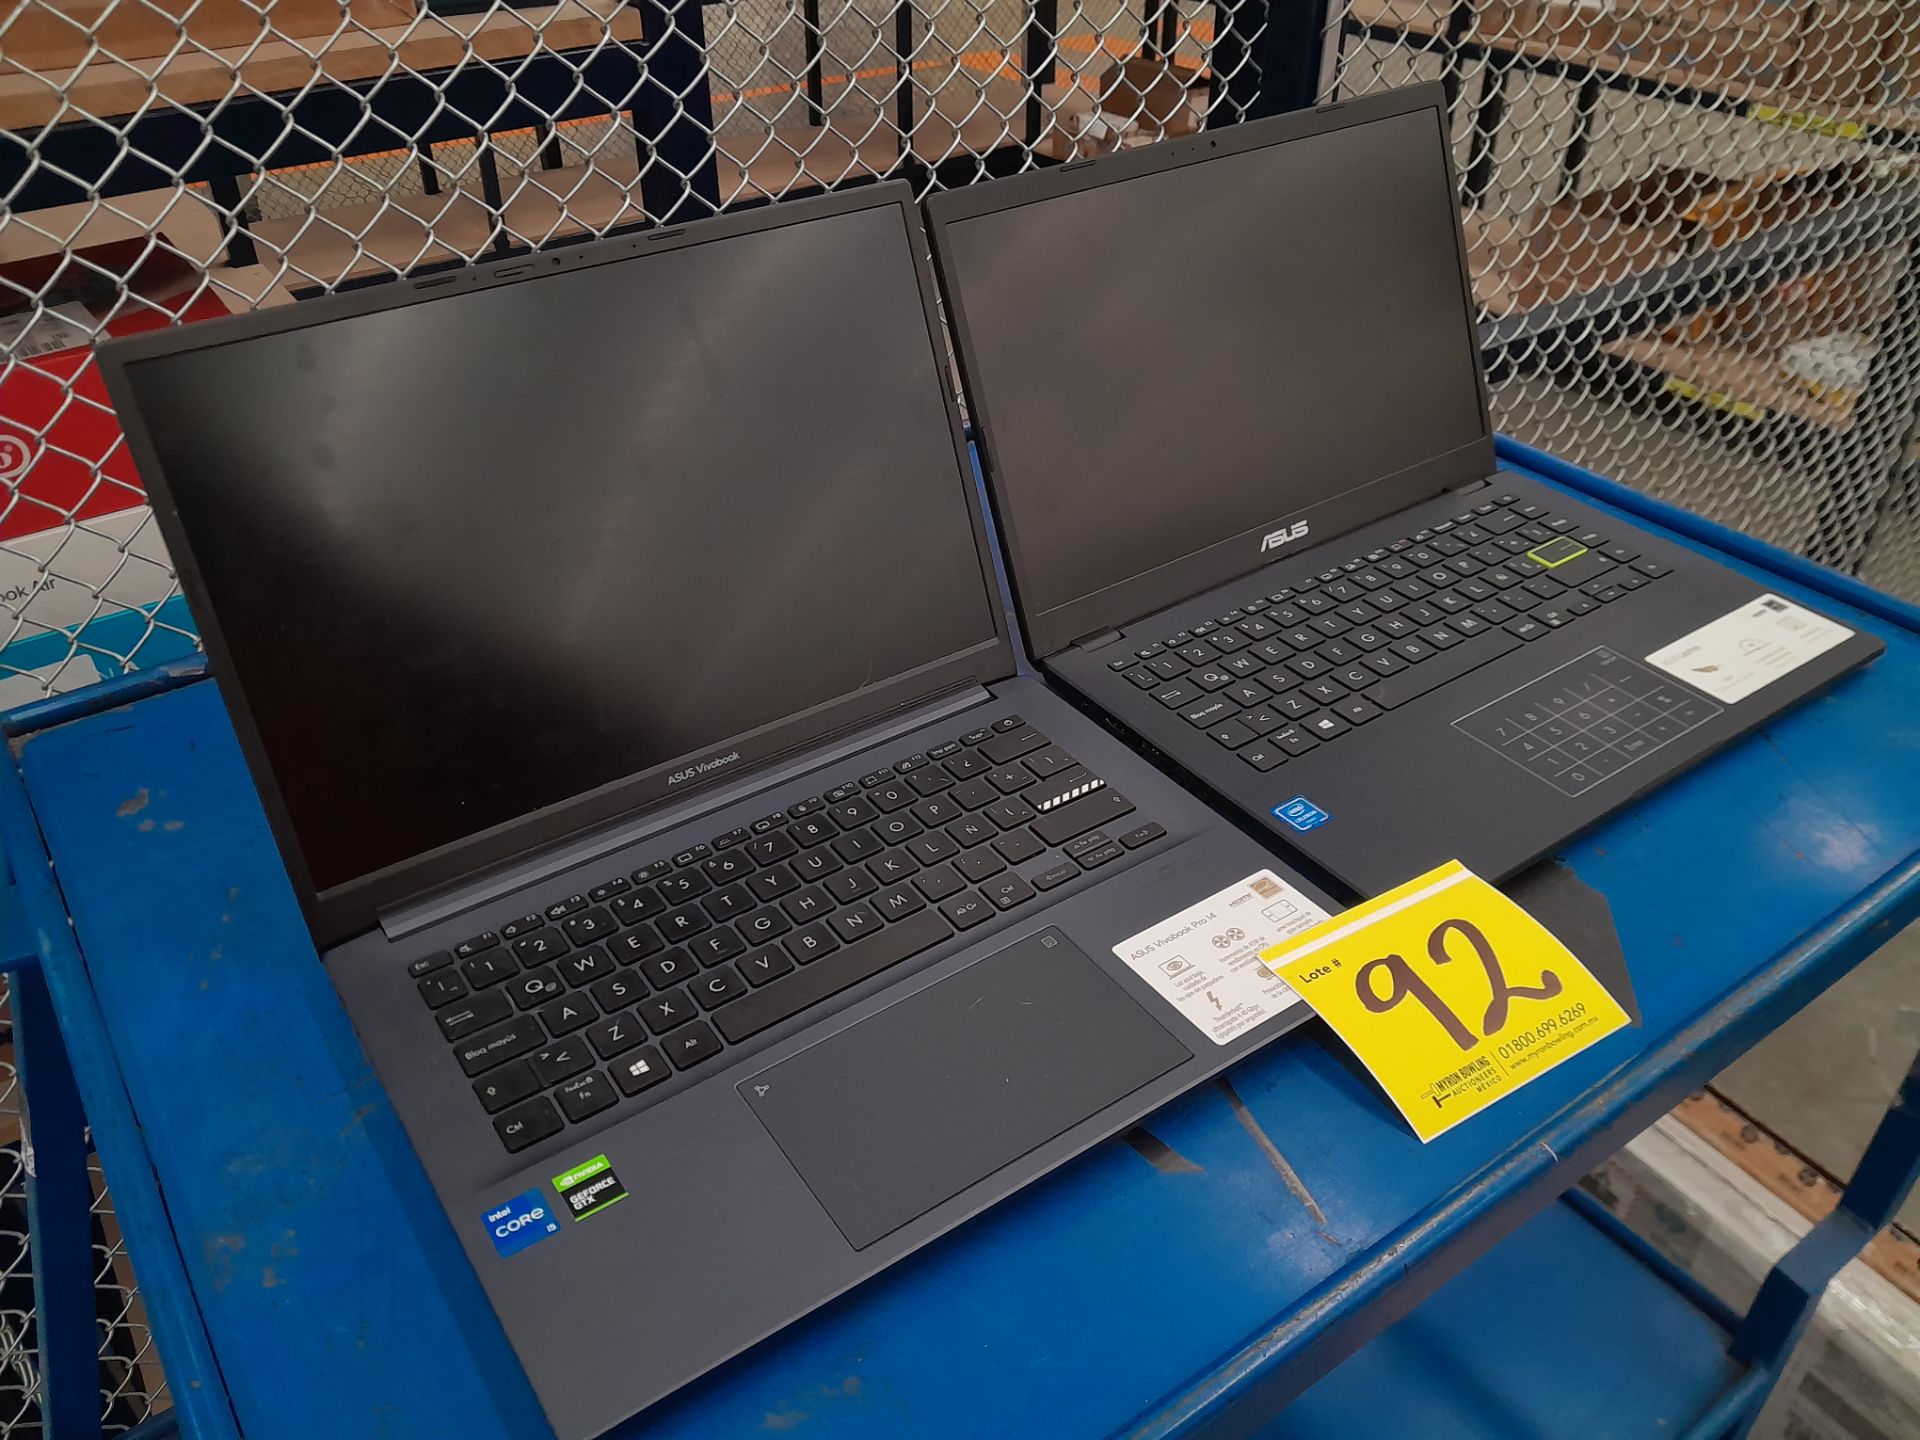 Lote de 2 laptops contiene: 1 Laptop Marca ASUS, Modelo R429M, Serie 192032, Color GRIS, Procesador - Image 3 of 5